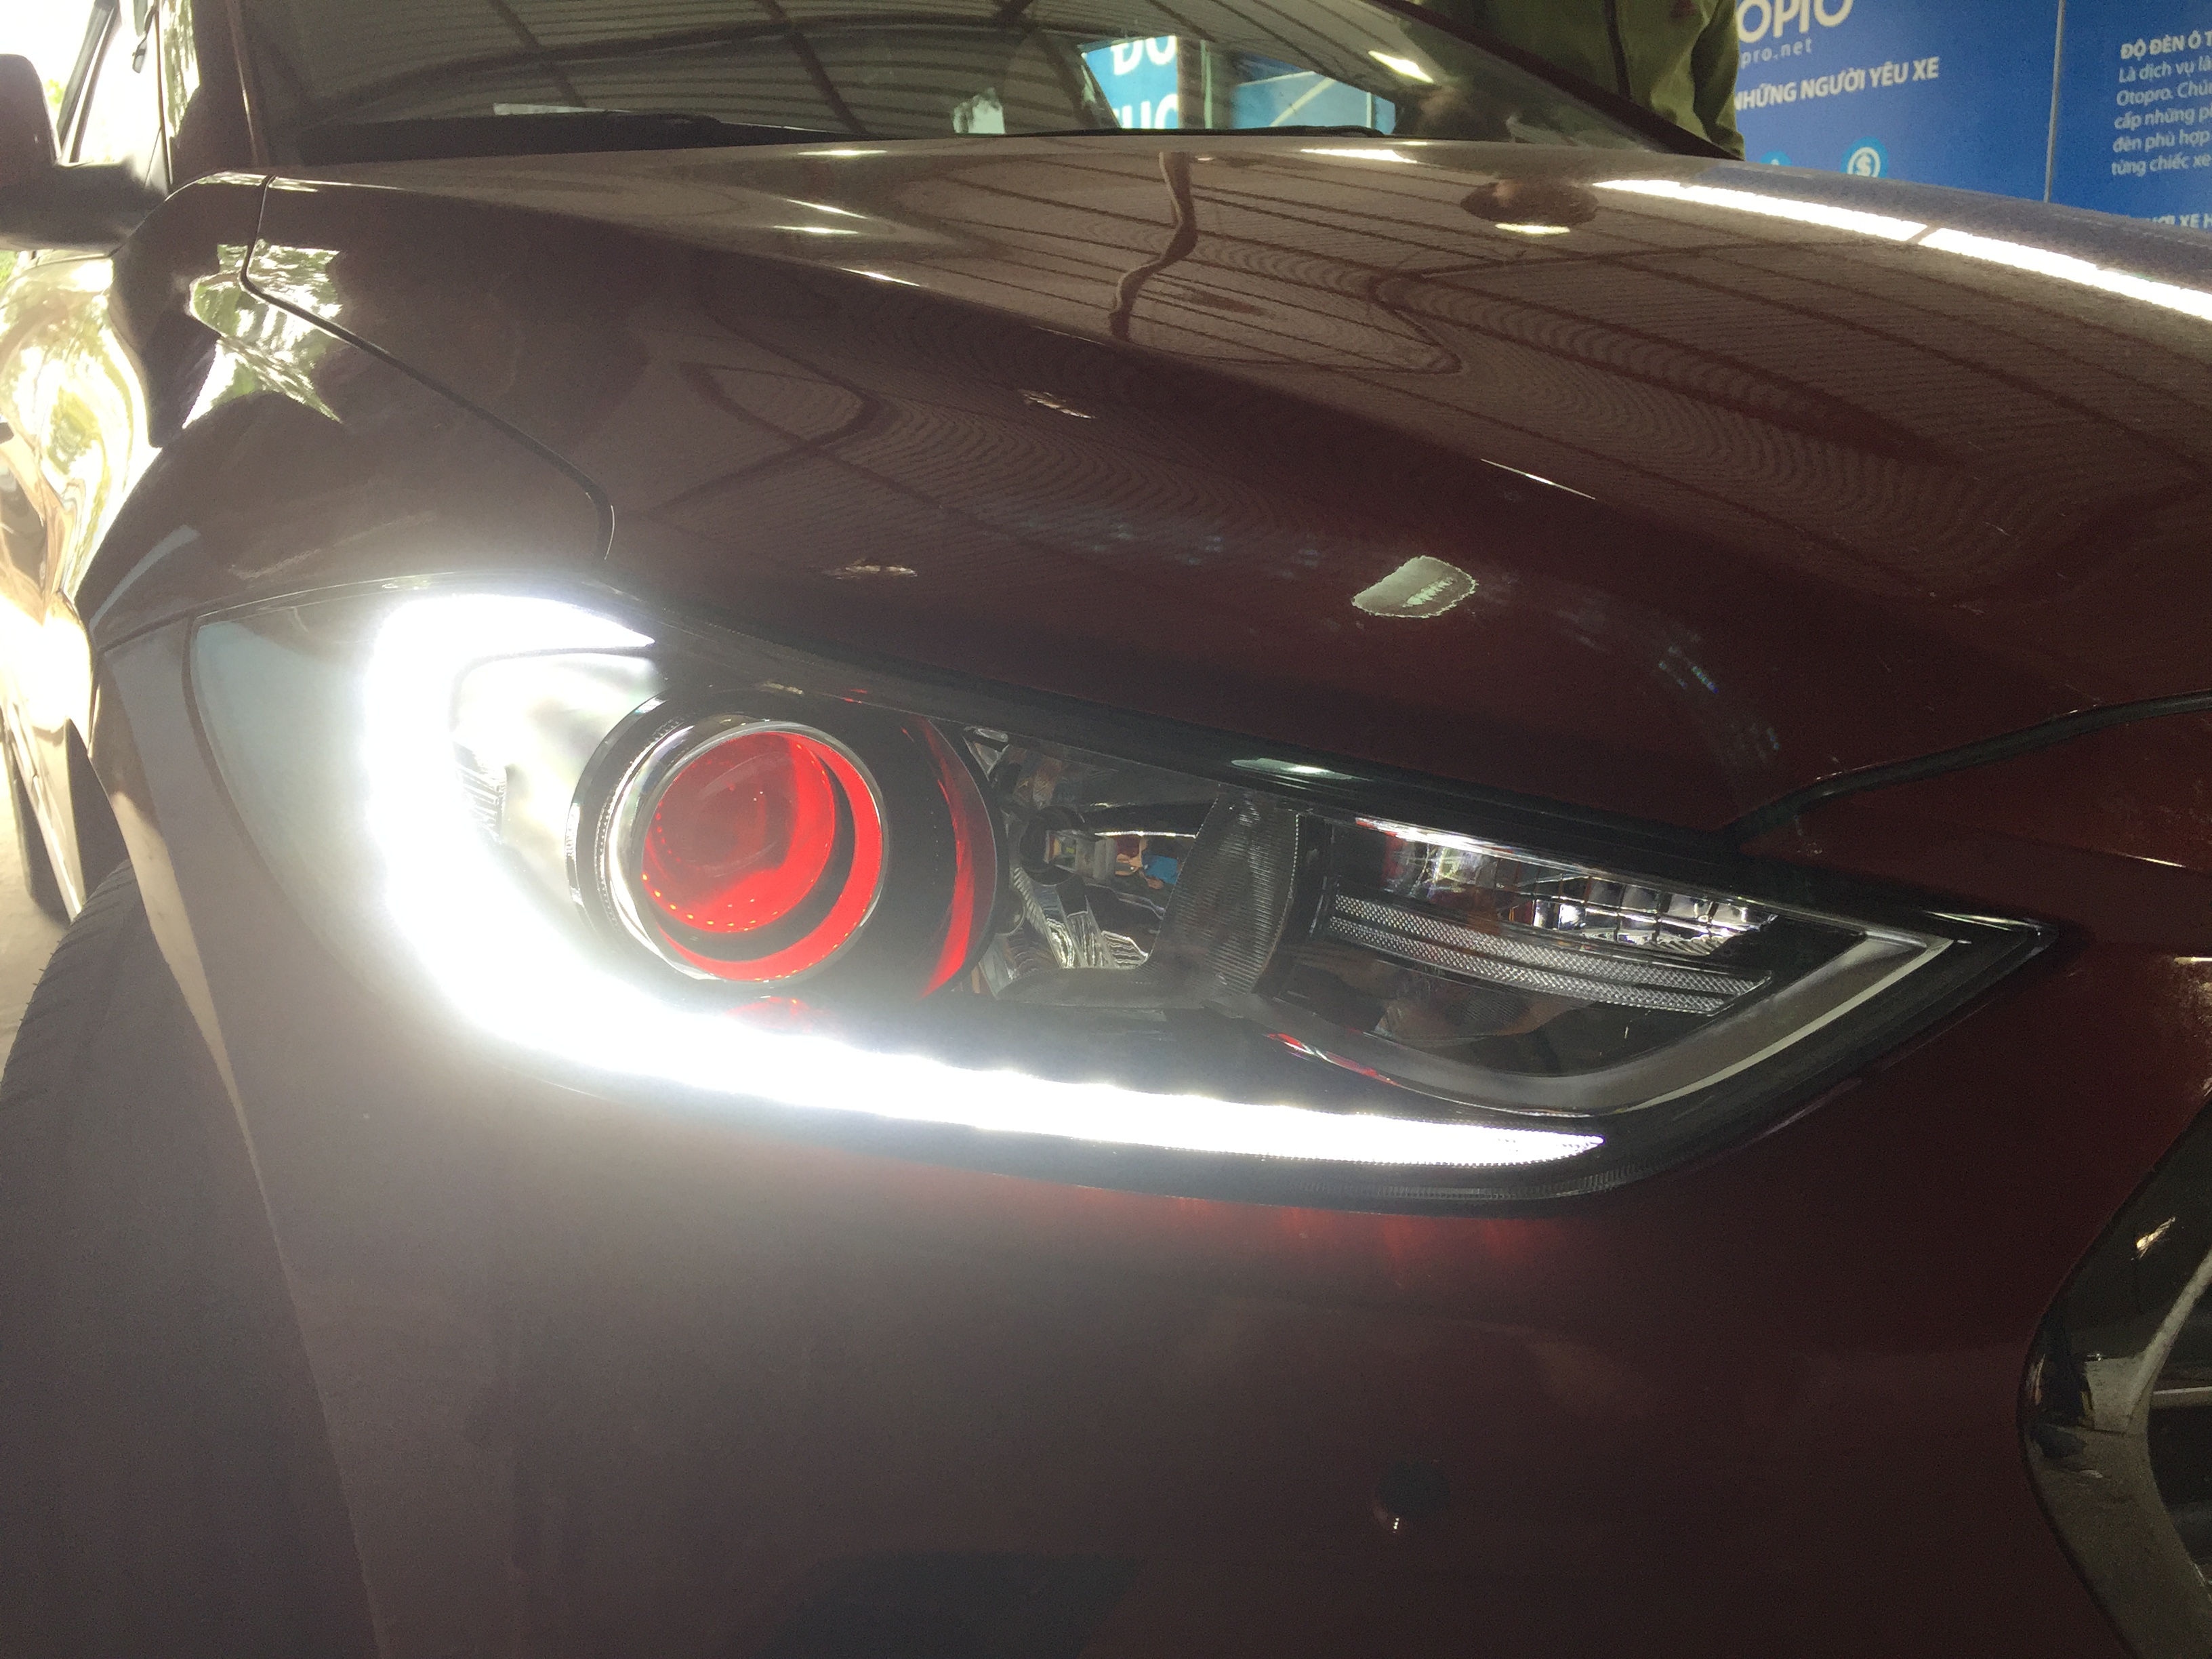 Hyundai Elantra độ bi hella5 , mắt quỷ đỏ, led gầm